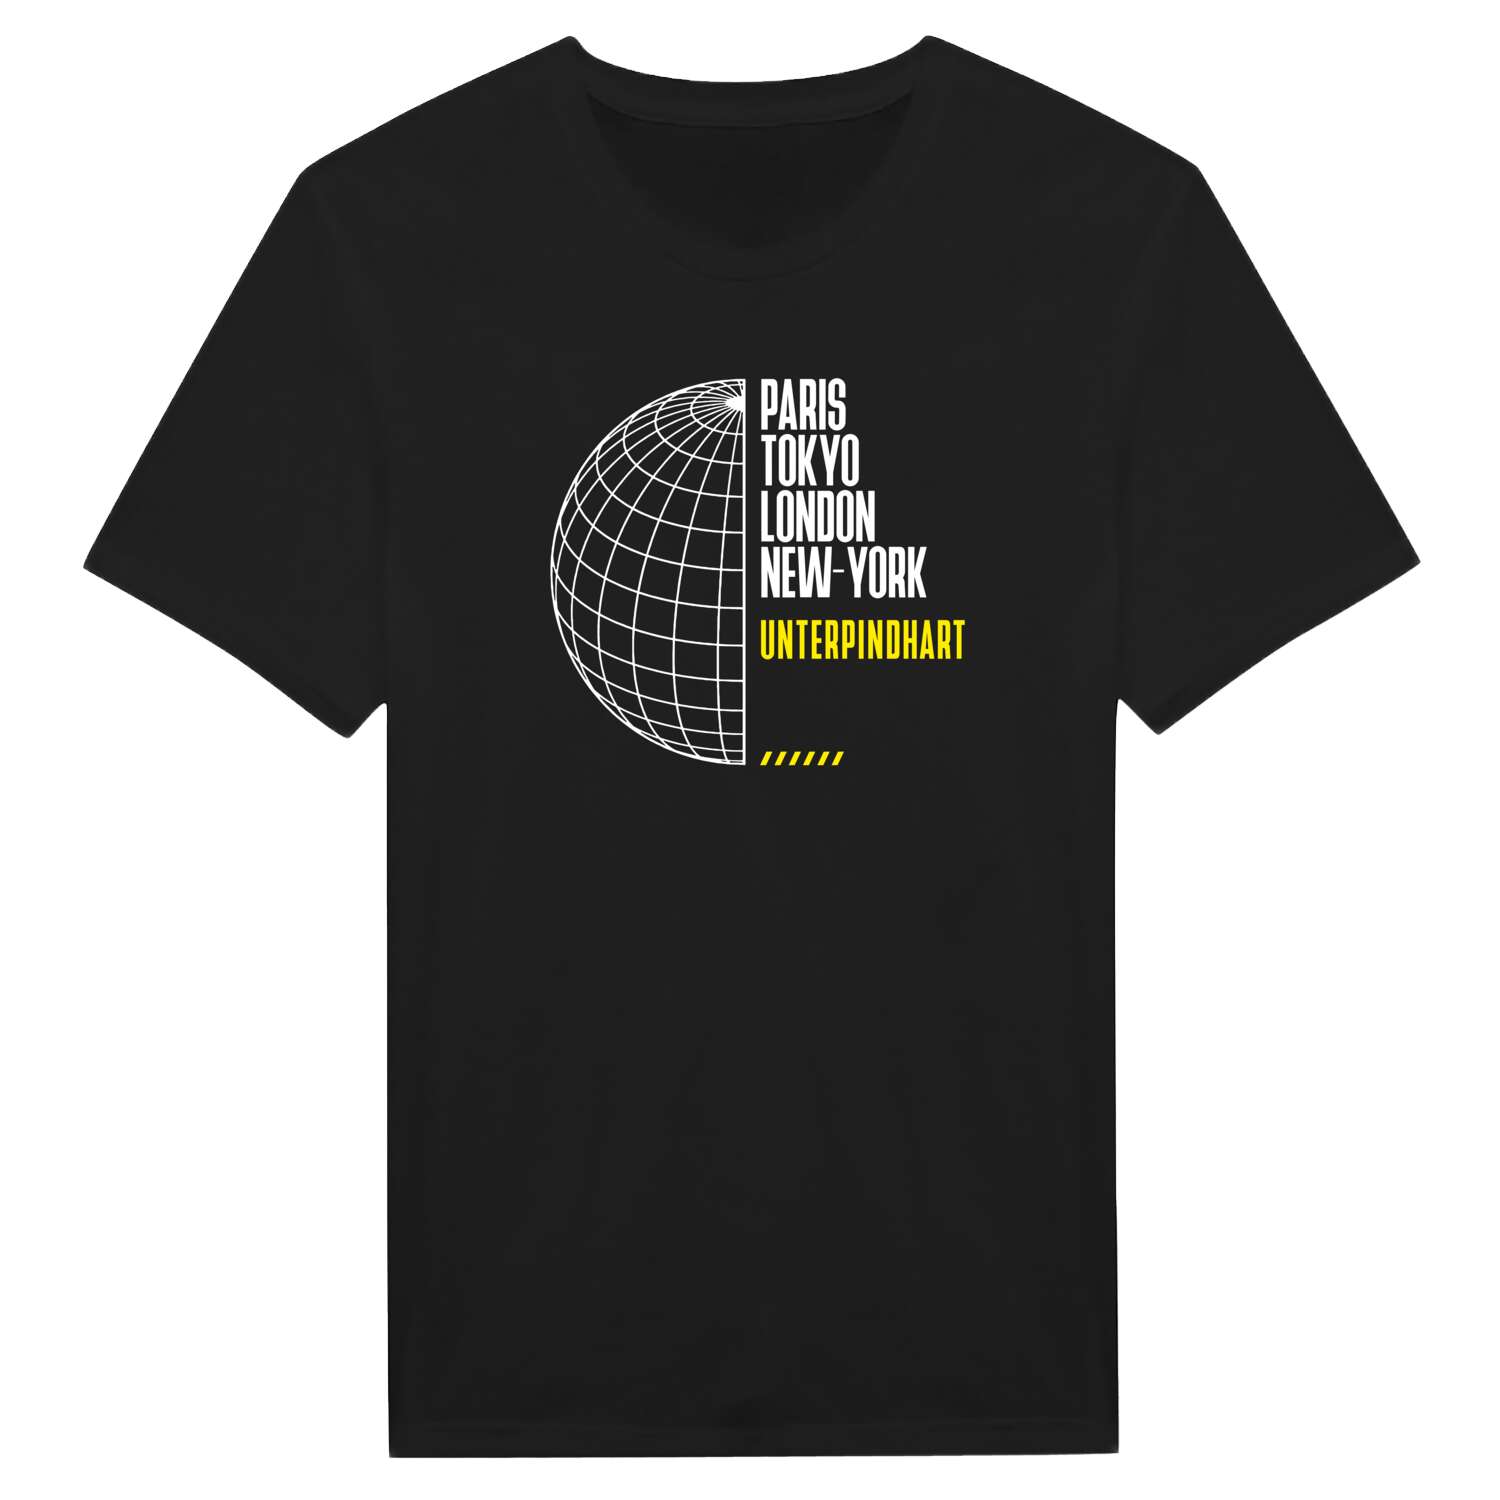 Unterpindhart T-Shirt »Paris Tokyo London«